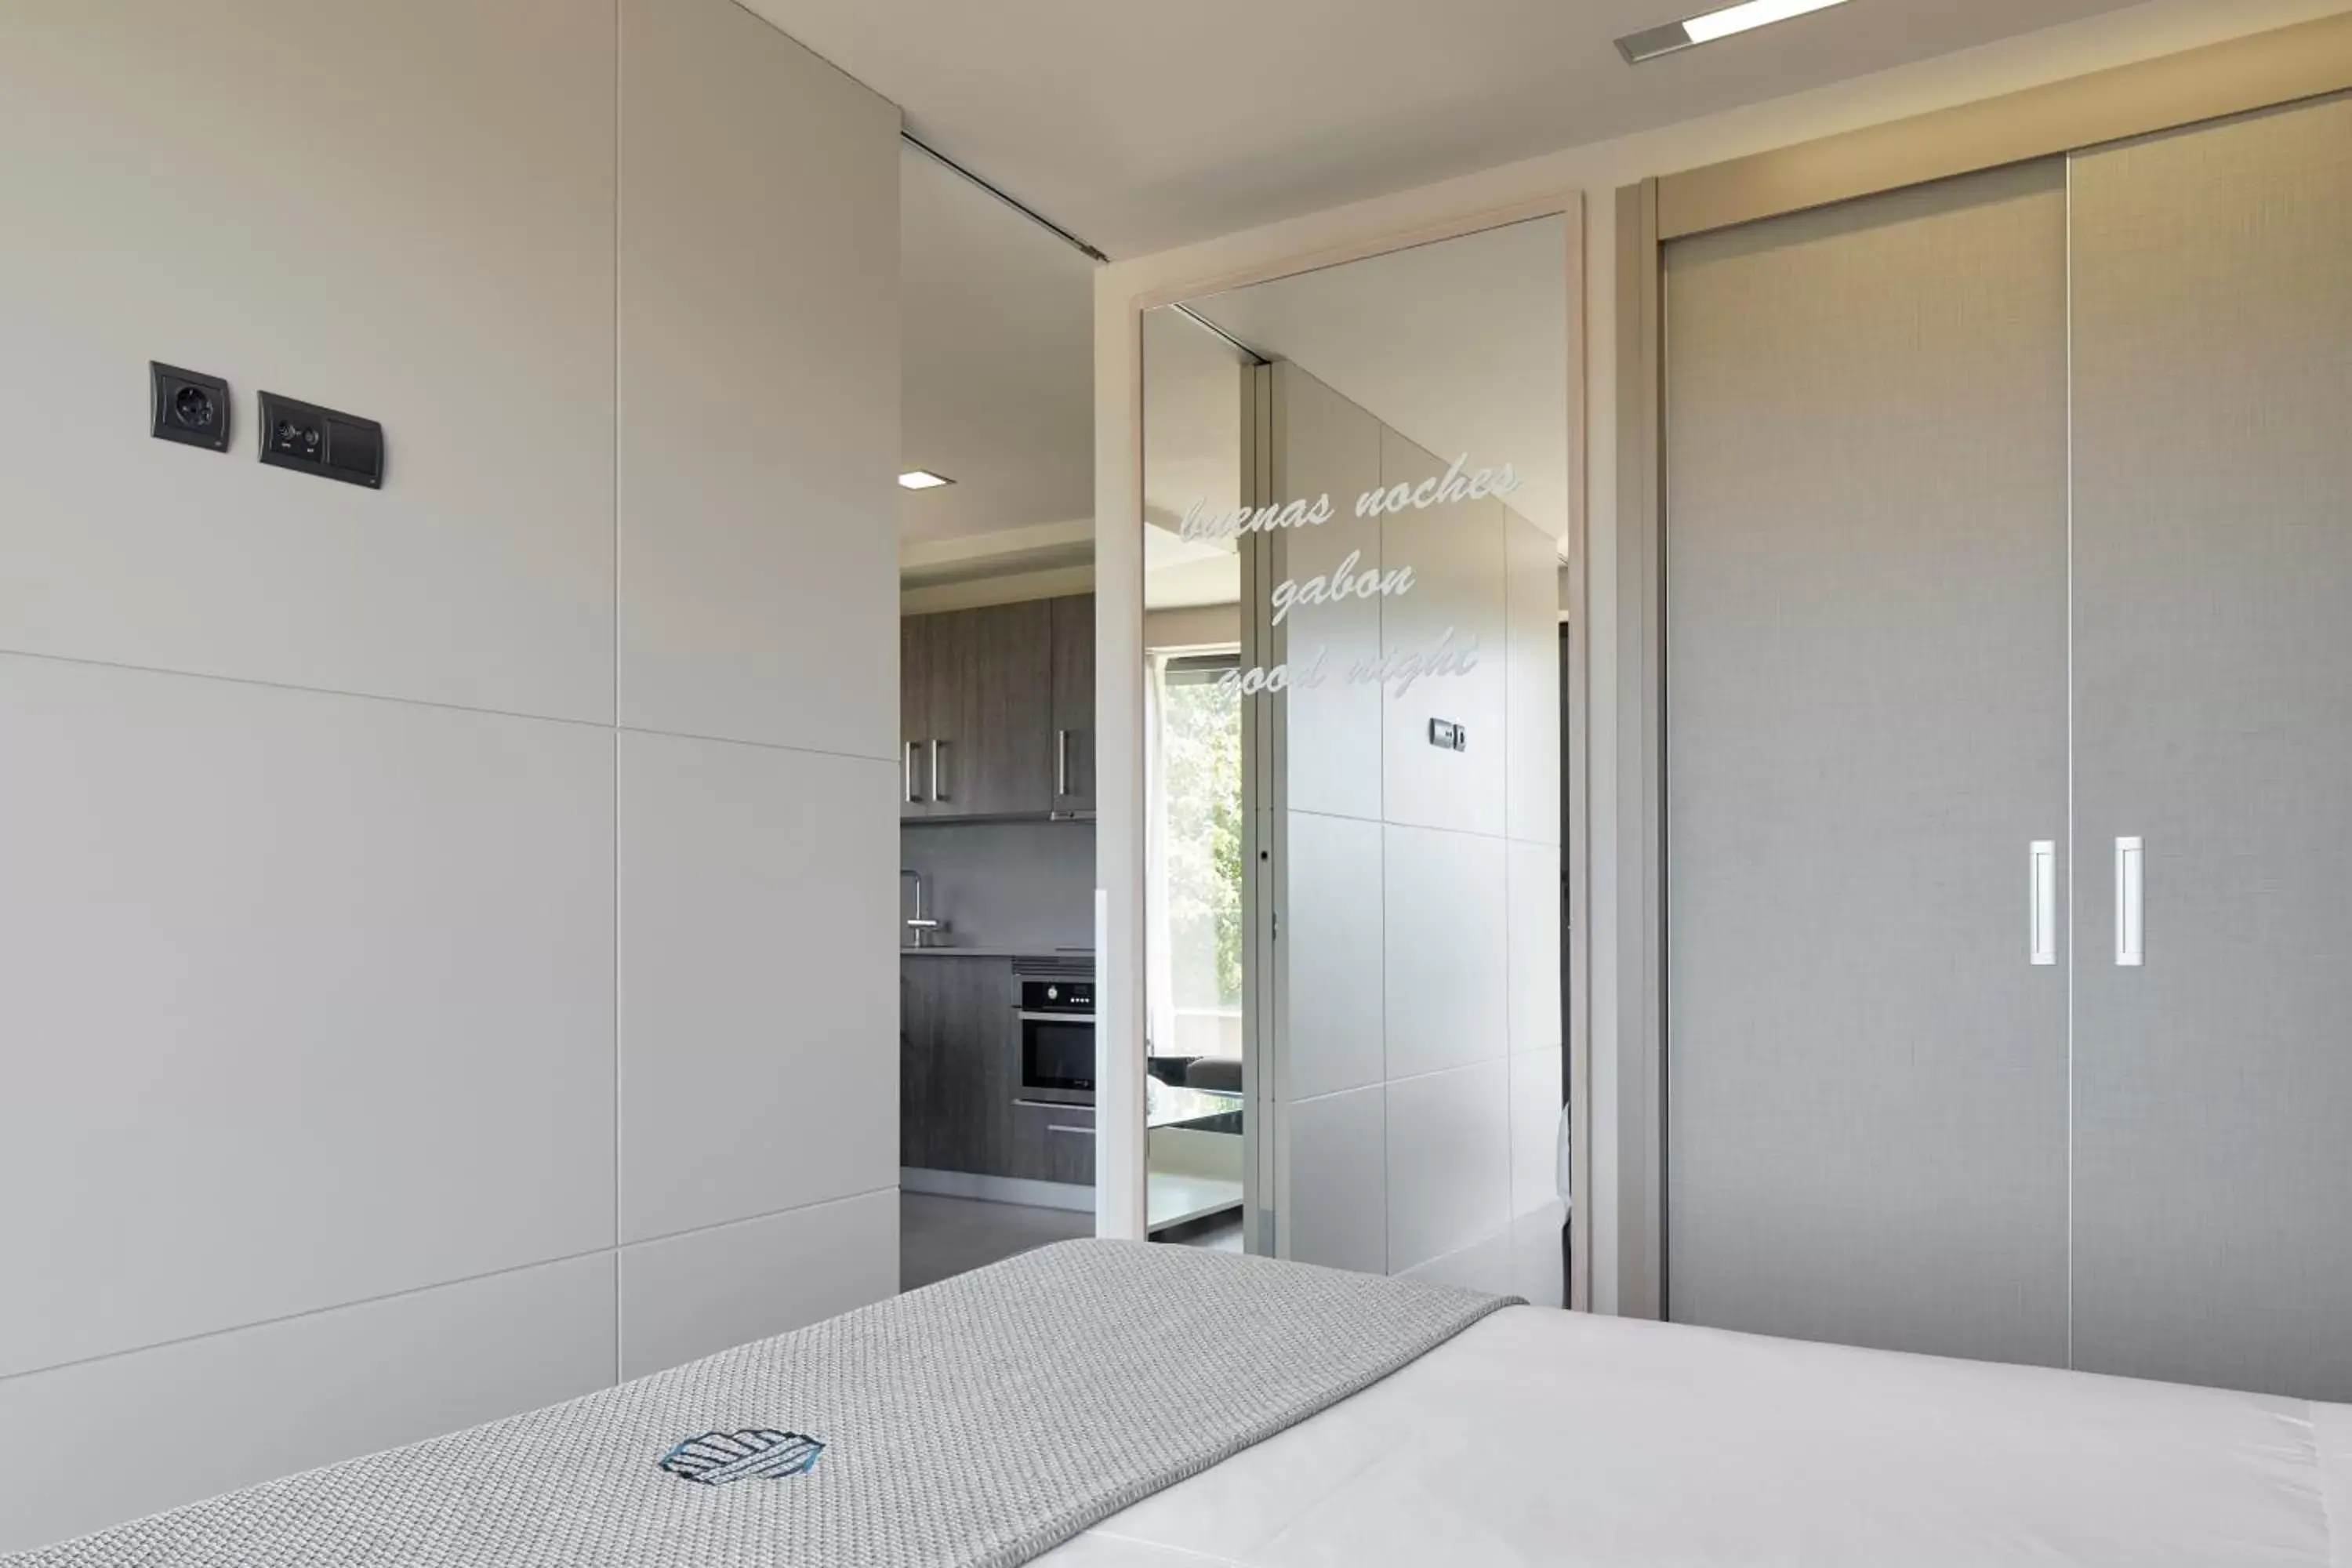 Bedroom, Bathroom in Irenaz Resort Apartamentos